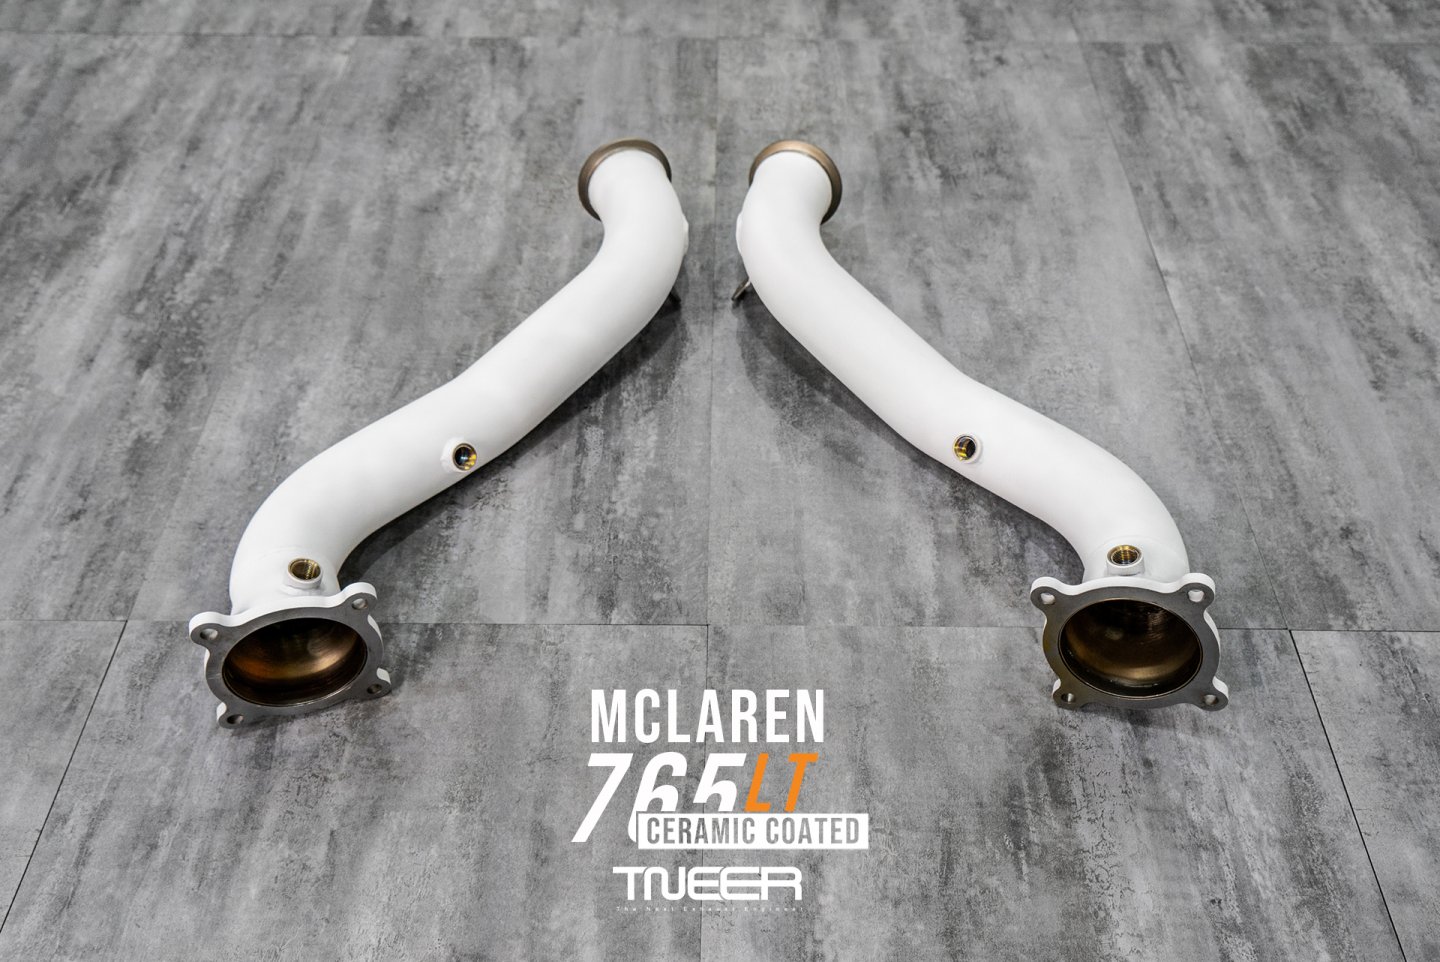 McLaren 765LT TNEER Quantum Ceramic Coated Downpipes